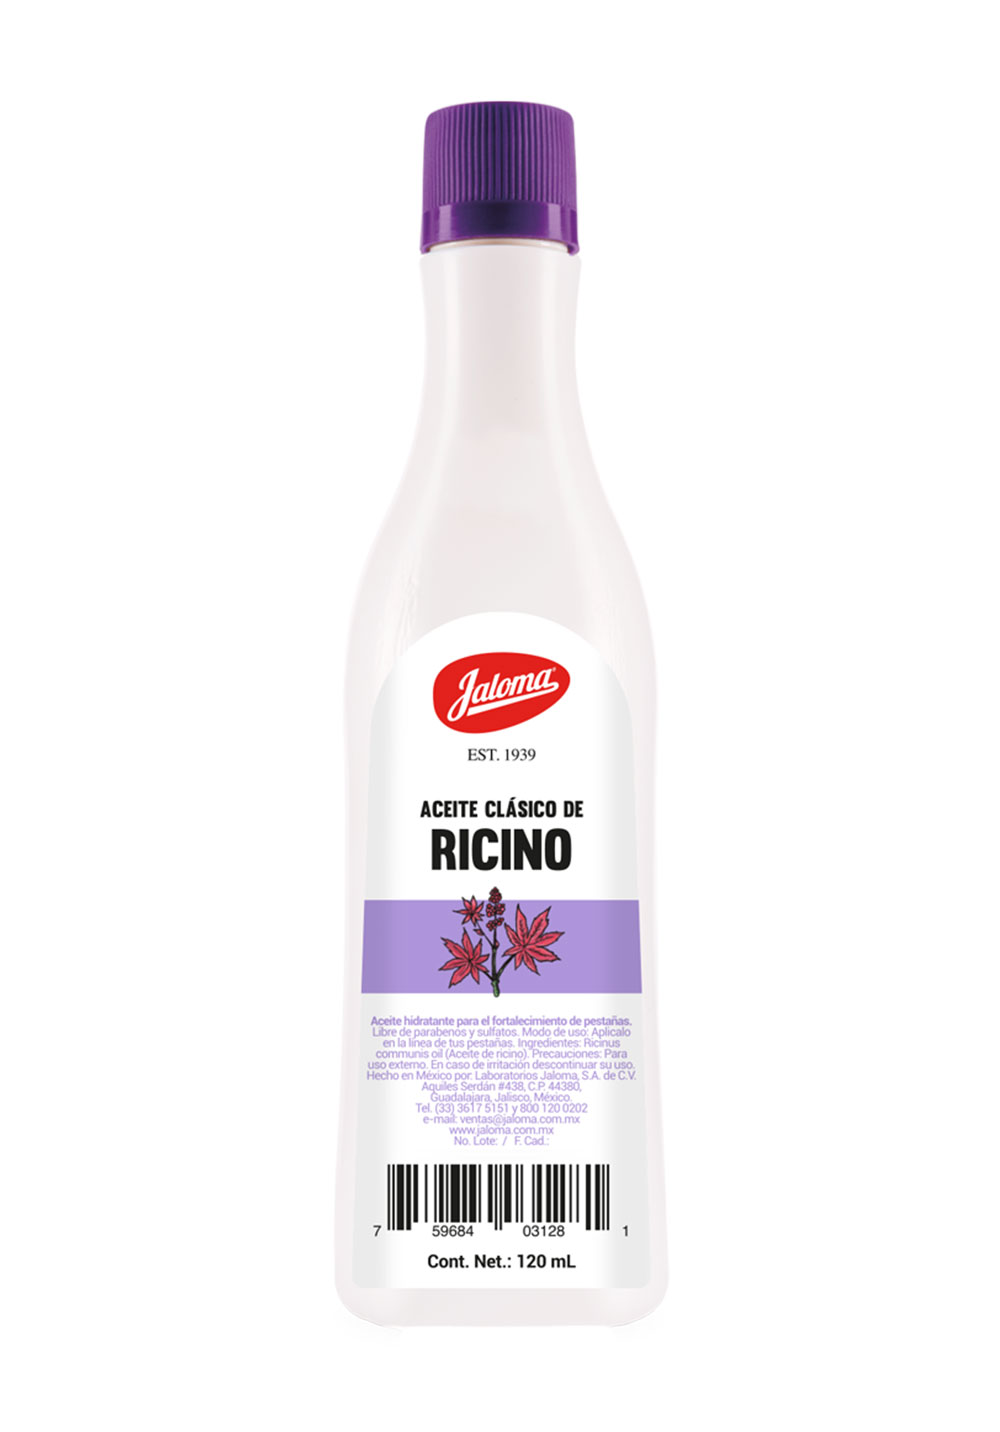 Aceite clásico de Ricino, 120 ml. – Jaloma